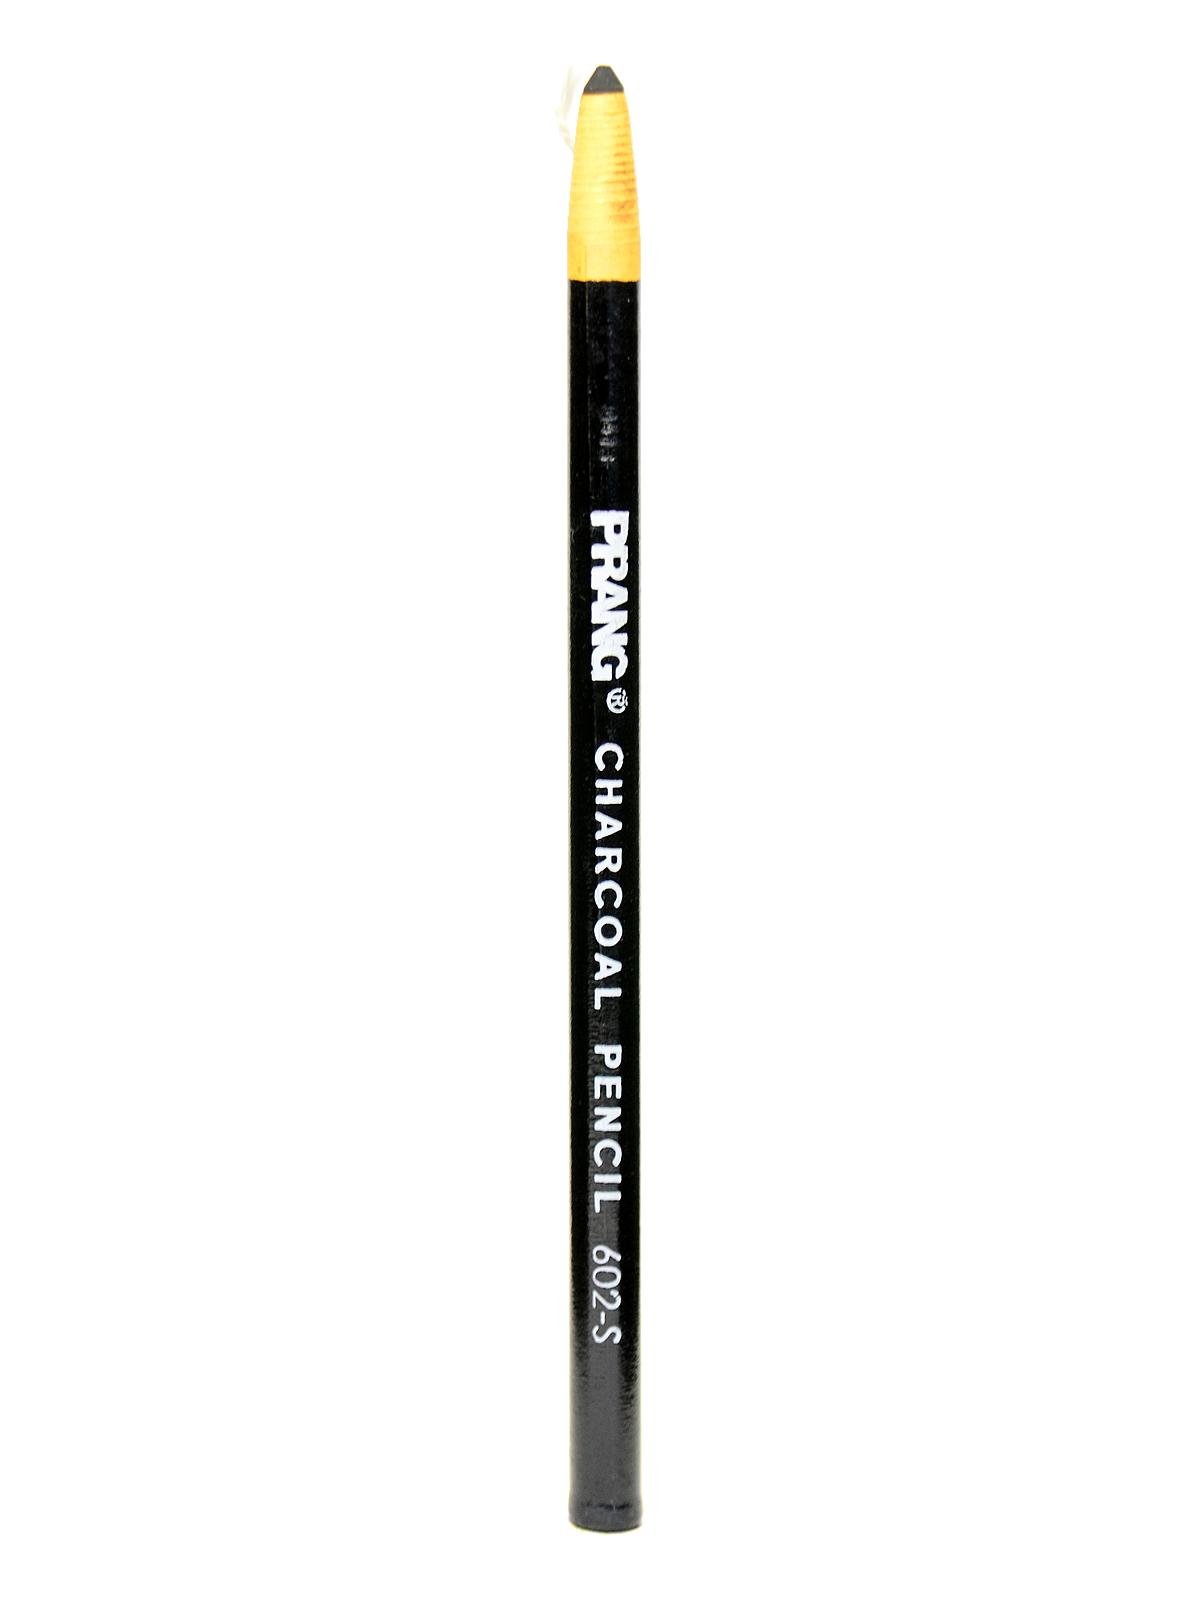 LA-CO, 10722-096013, General Purpose Paper Wrapped Grease Pencil - Black